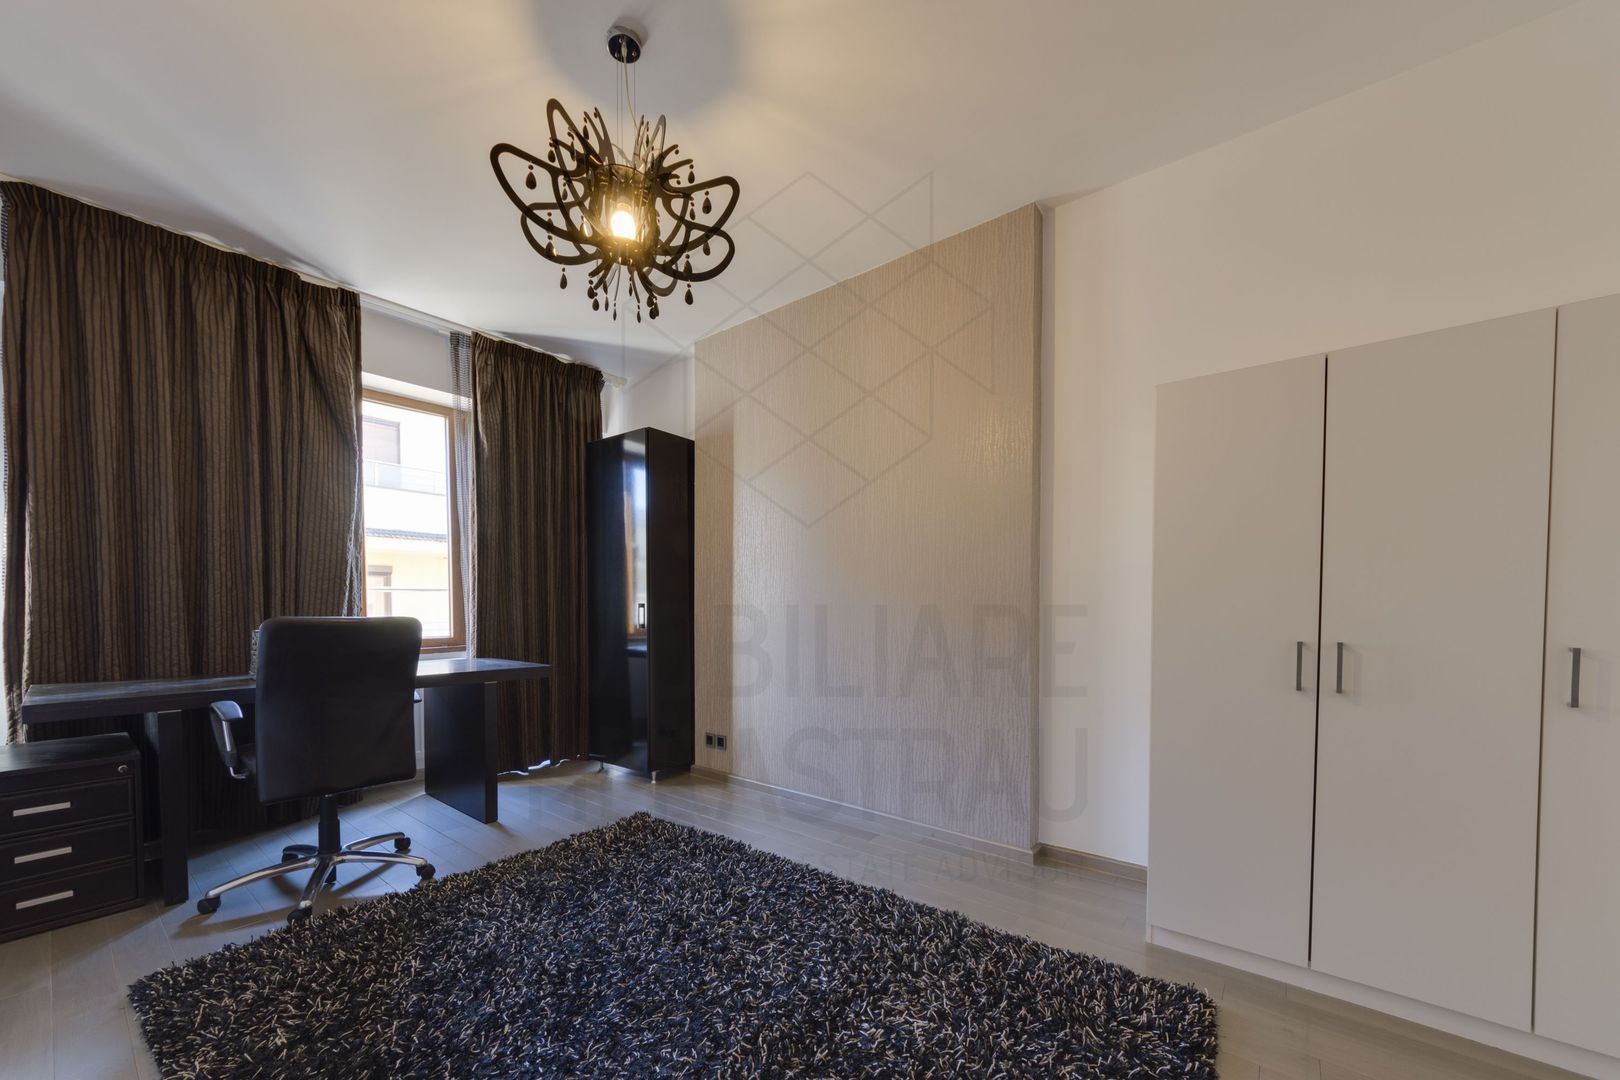 Venturio Penthouse | Satul Francez | Redefineste luxul in 3 camere